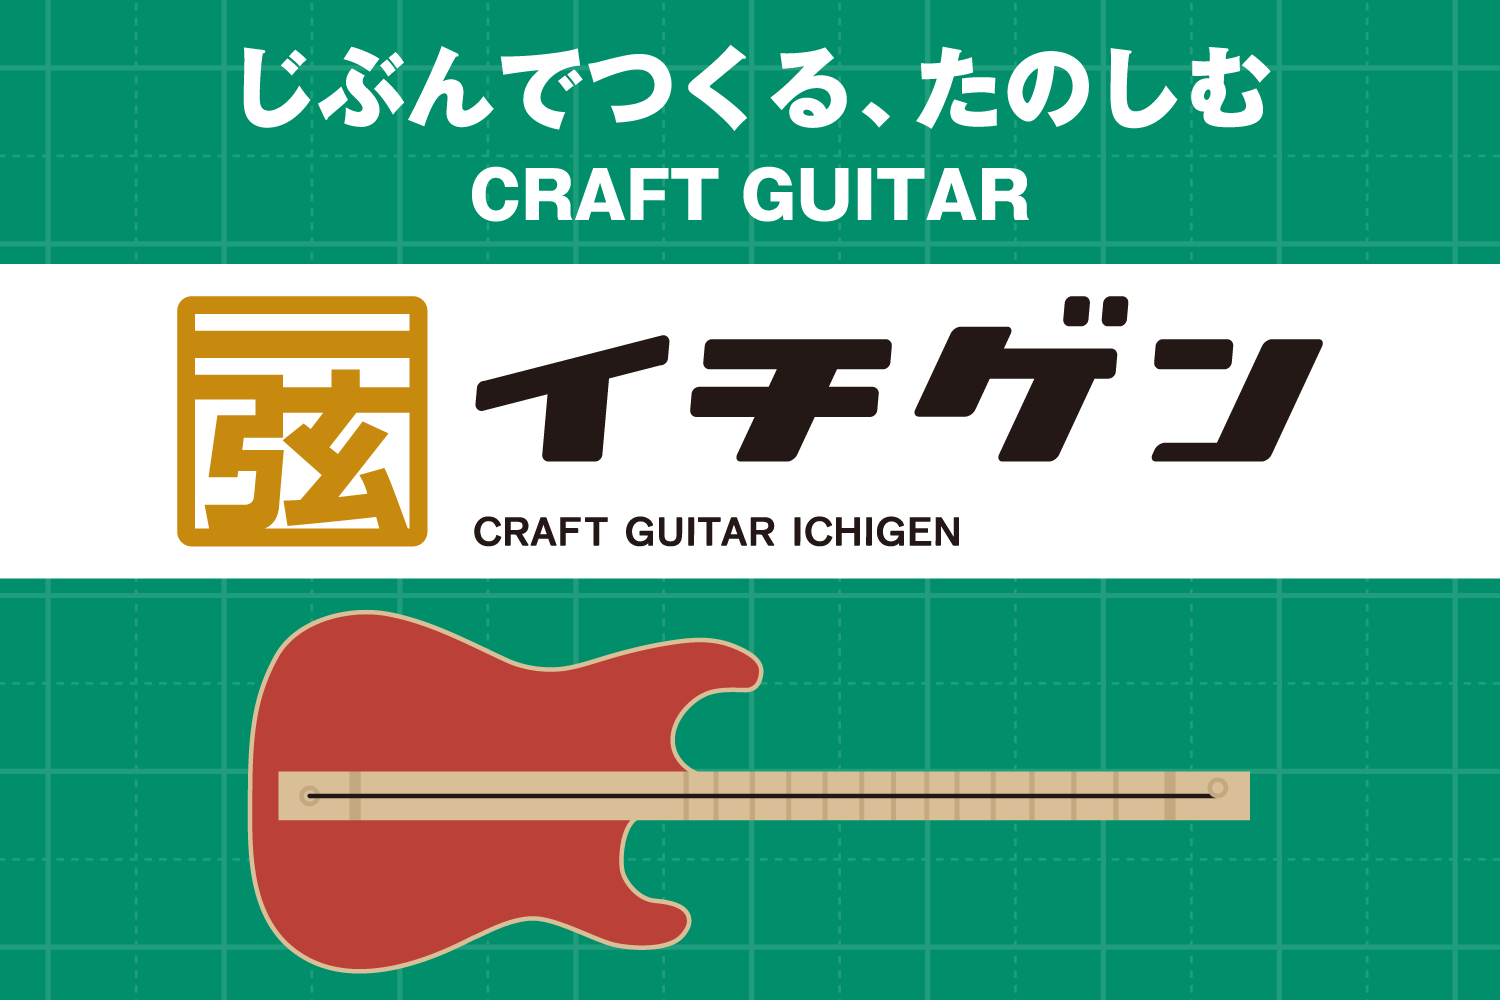 島村楽器株式会社（本社：東京都江戸川区、代表取締役社長：廣瀬 利明、以下 島村楽器）は、1本弦ギター工作キット「イチゲン」を7月22日（土）に発売いたします。 ギター工作キット「イ……